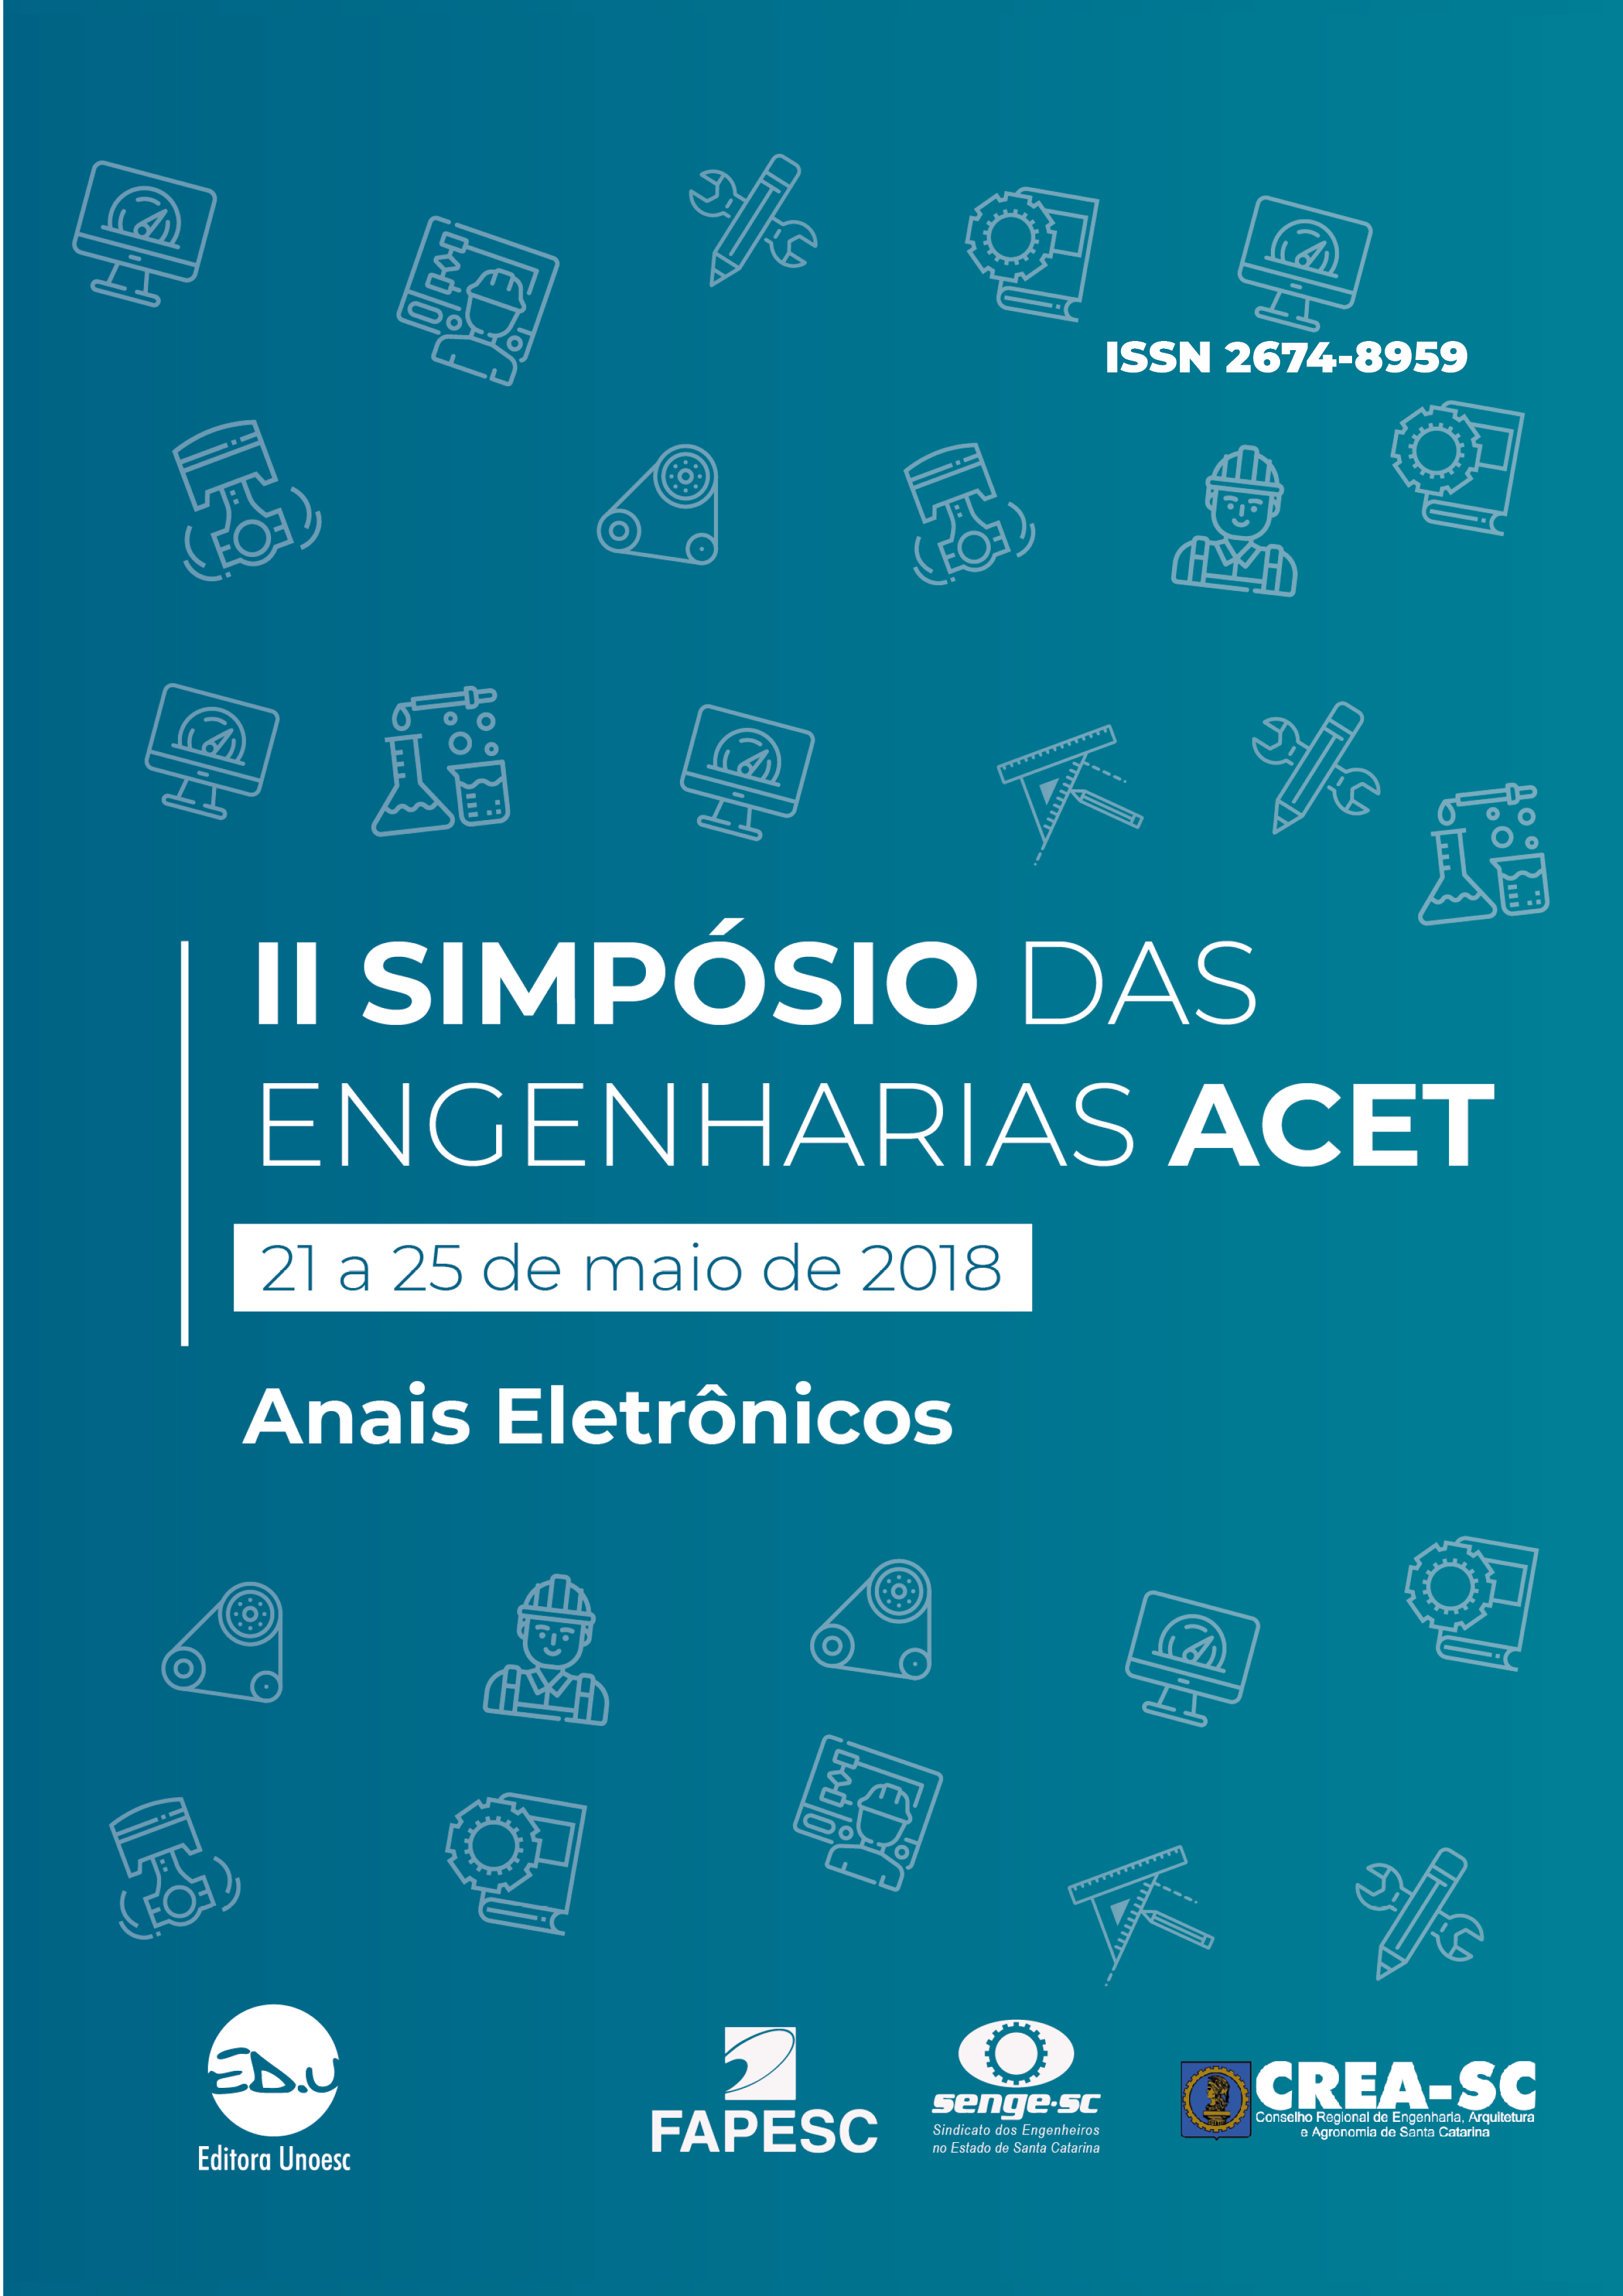 					Afficher 2018: Simpósio das Engenharias ACET  (Área das Ciências Exatas e Tecnológicas) – anais eletrônicos
				